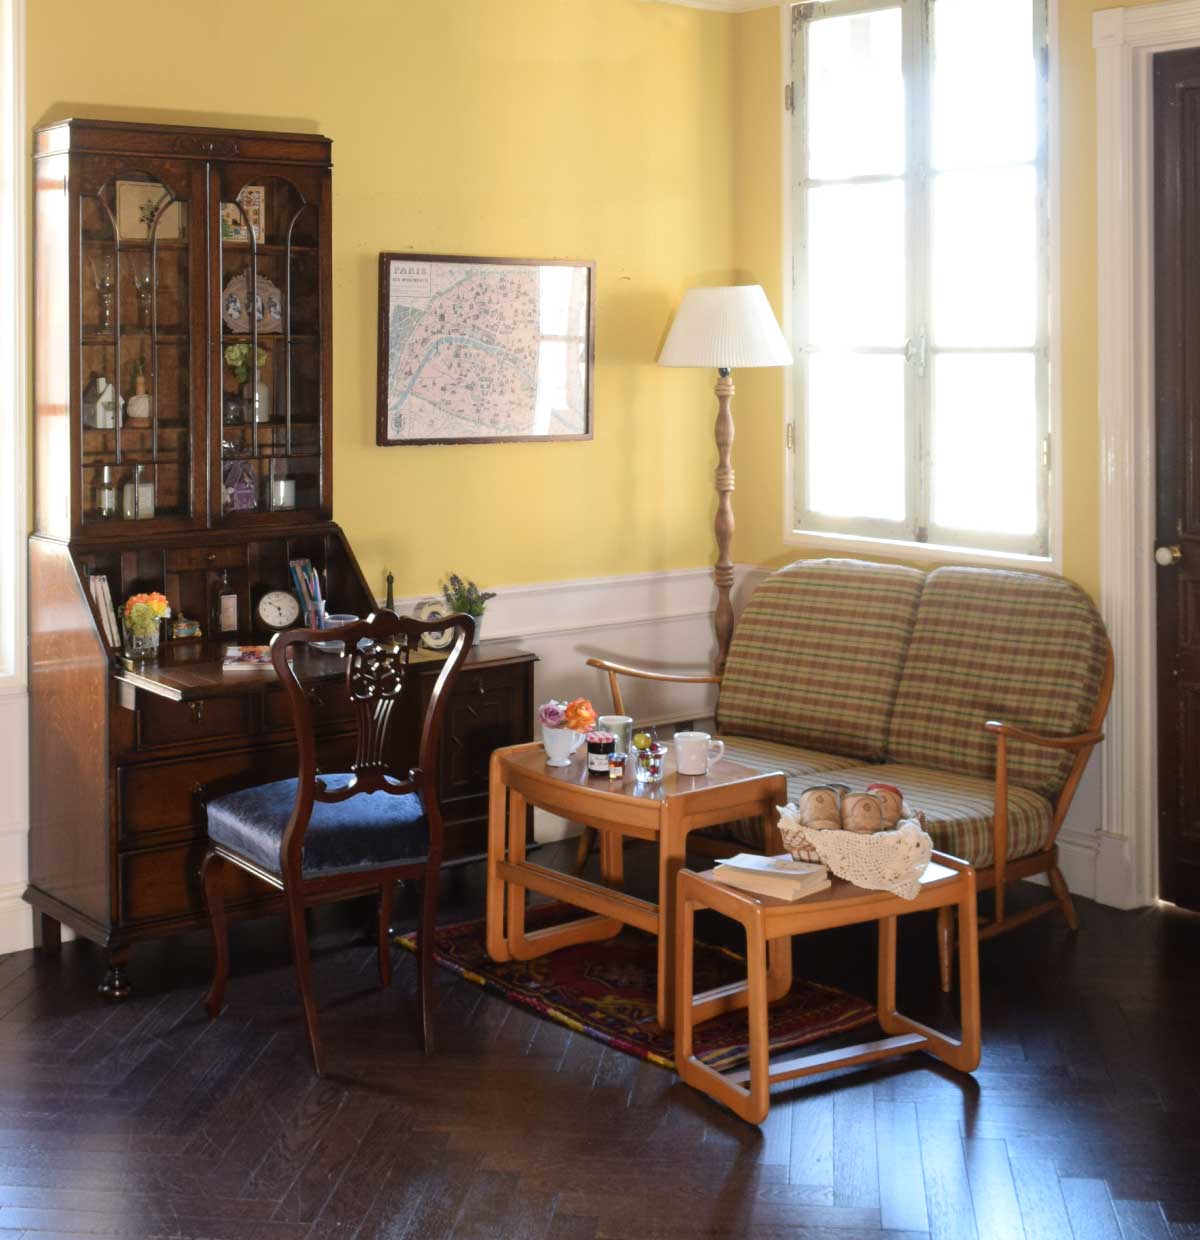 ハンドルスタイルの | 家具のスタイルと色で分けた休憩スペースのある書斎